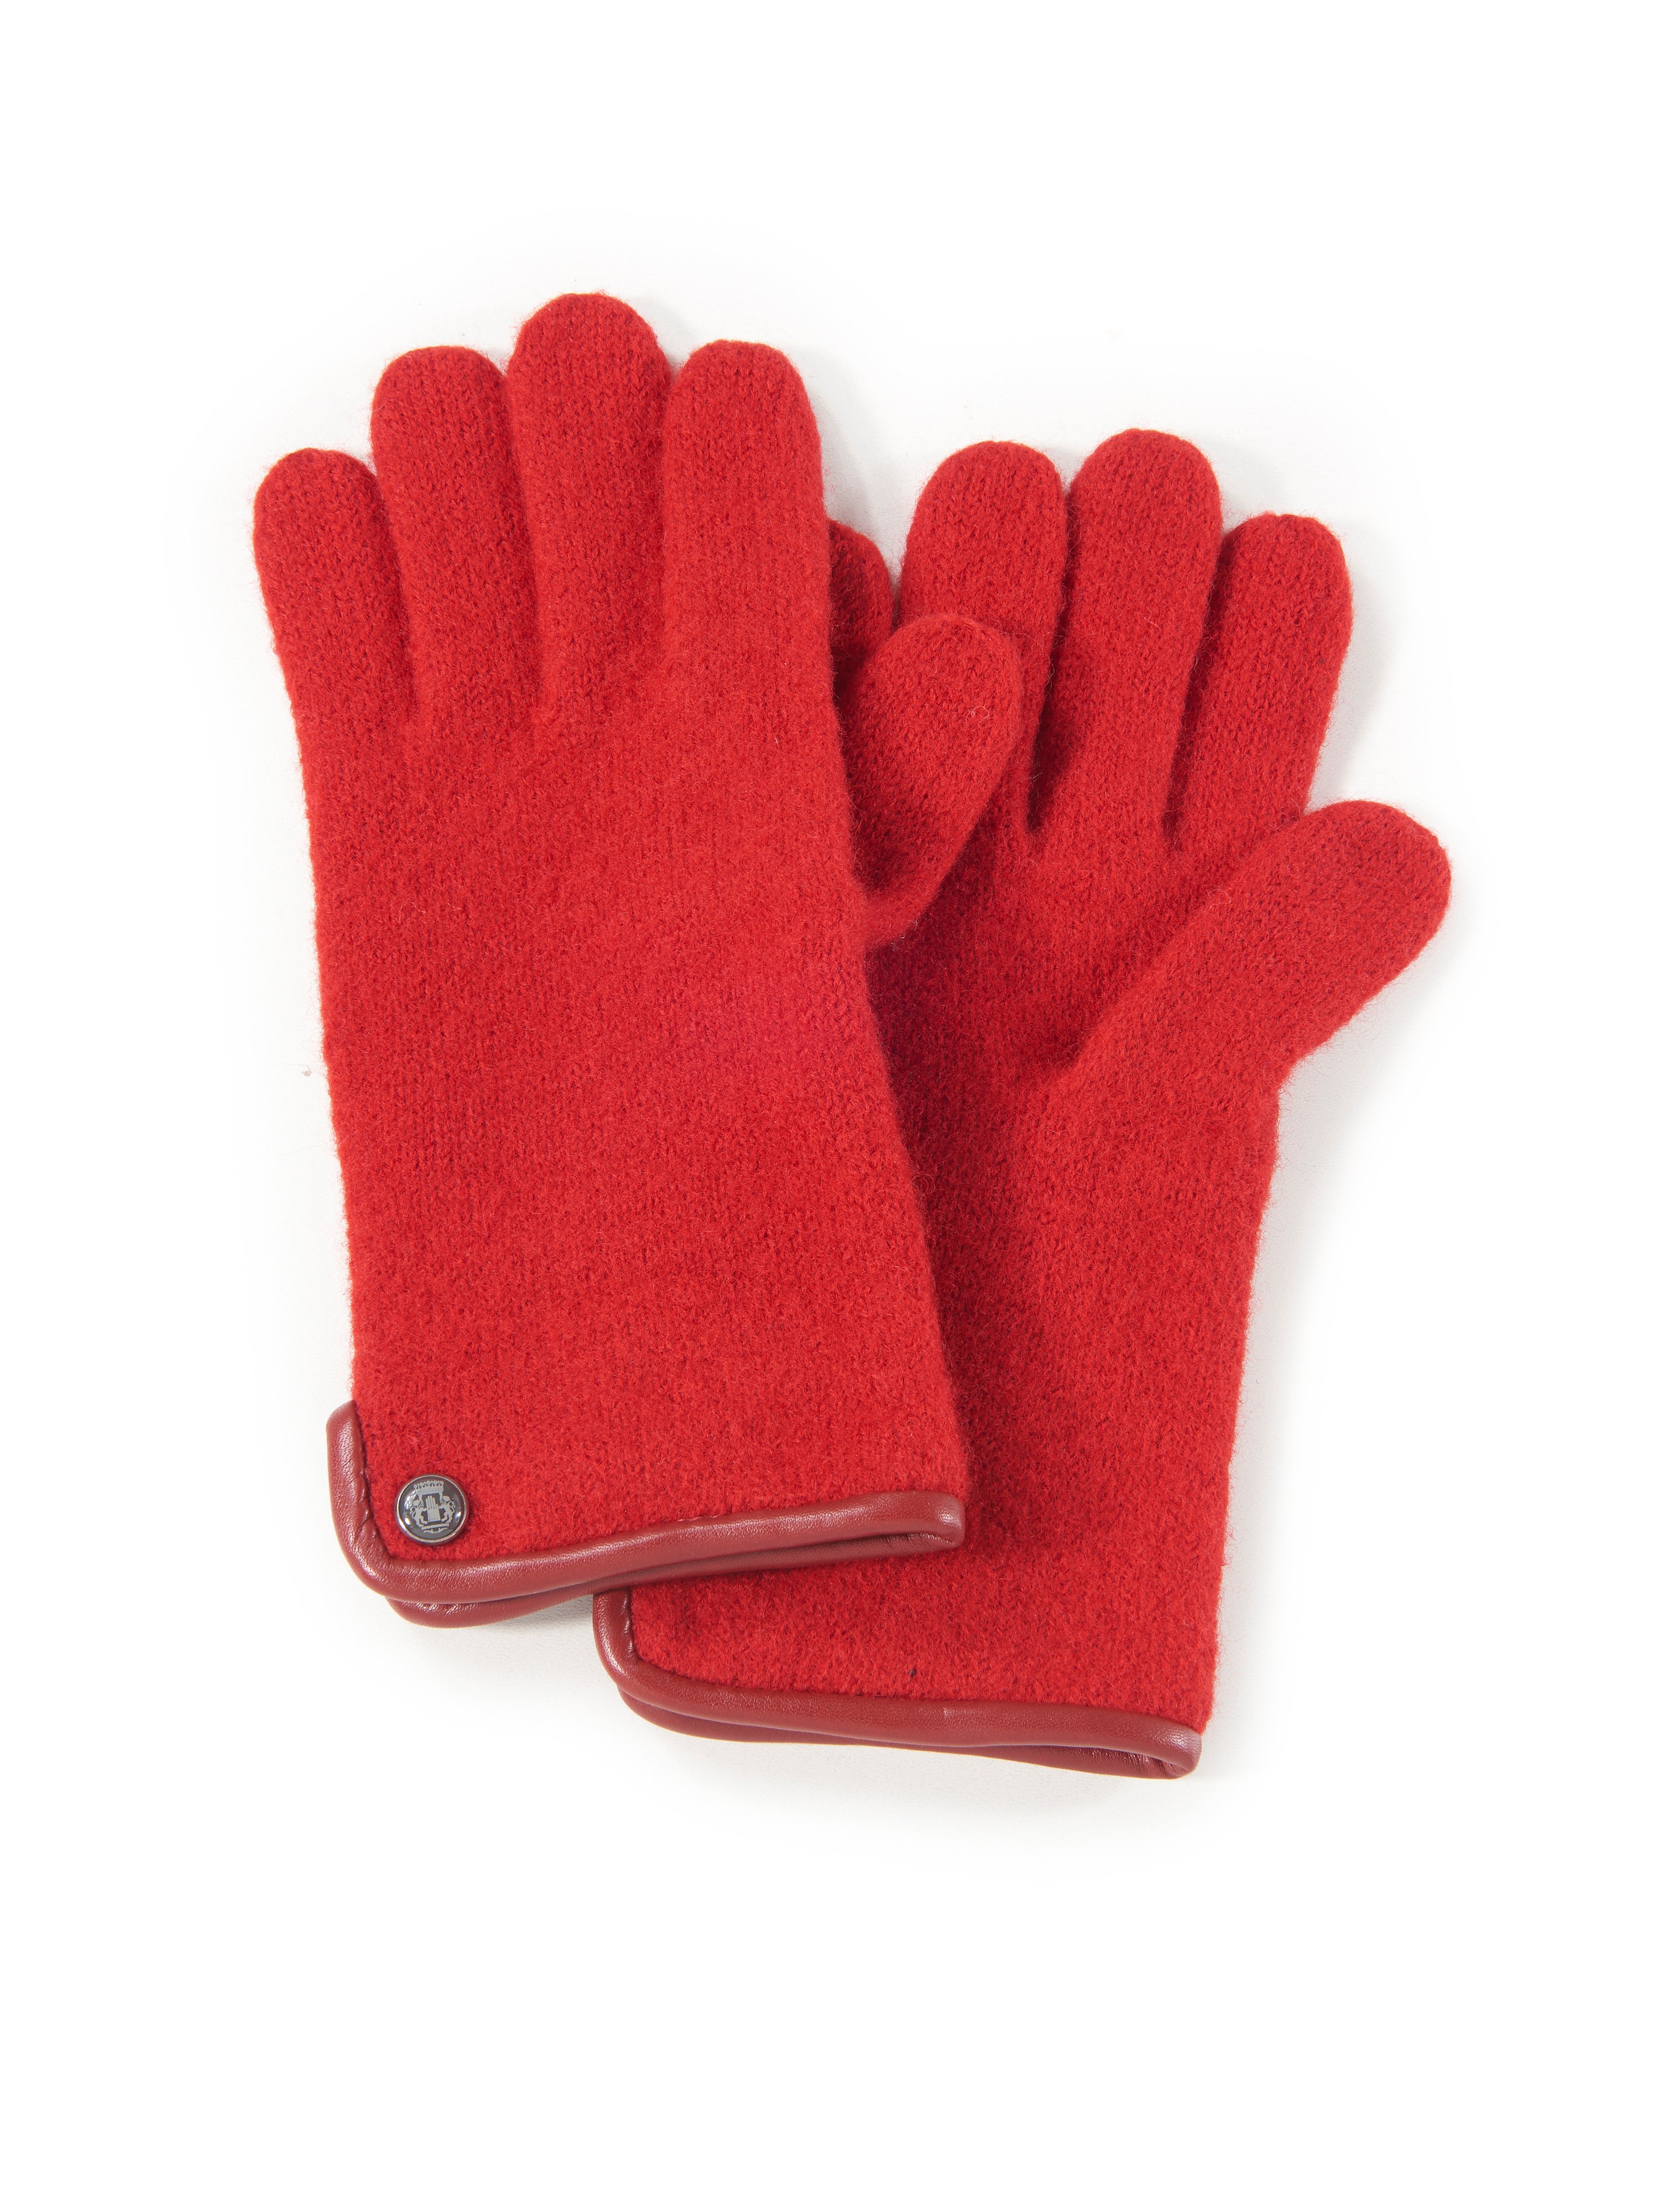 Les gants 100% laine vierge  Roeckl rouge taille 8